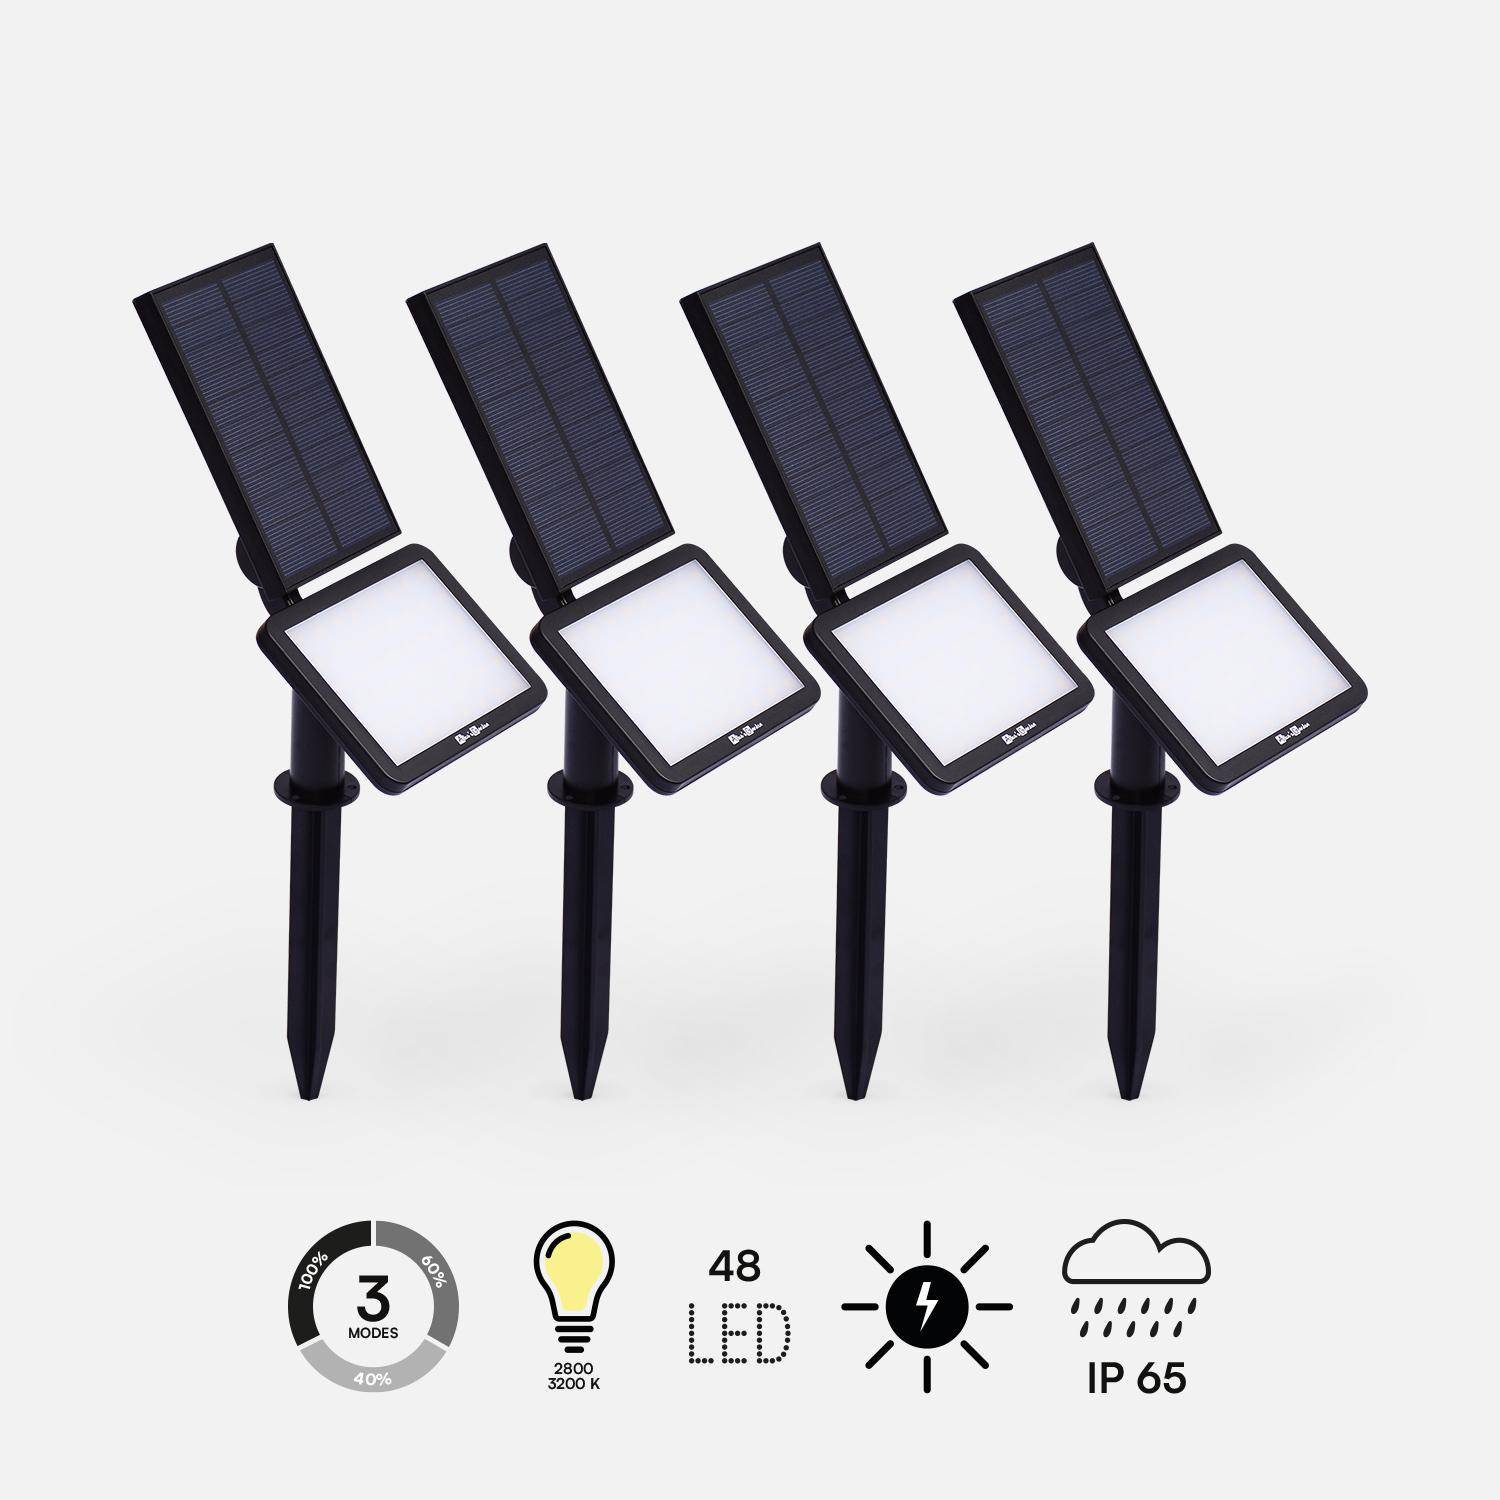 Spots solaires LED - Lot de 4, batterie lithium, blanc chaud, 960 lumens, luminaire extérieur résistant à l'eau, projecteur autonome à recharge solaire Photo1